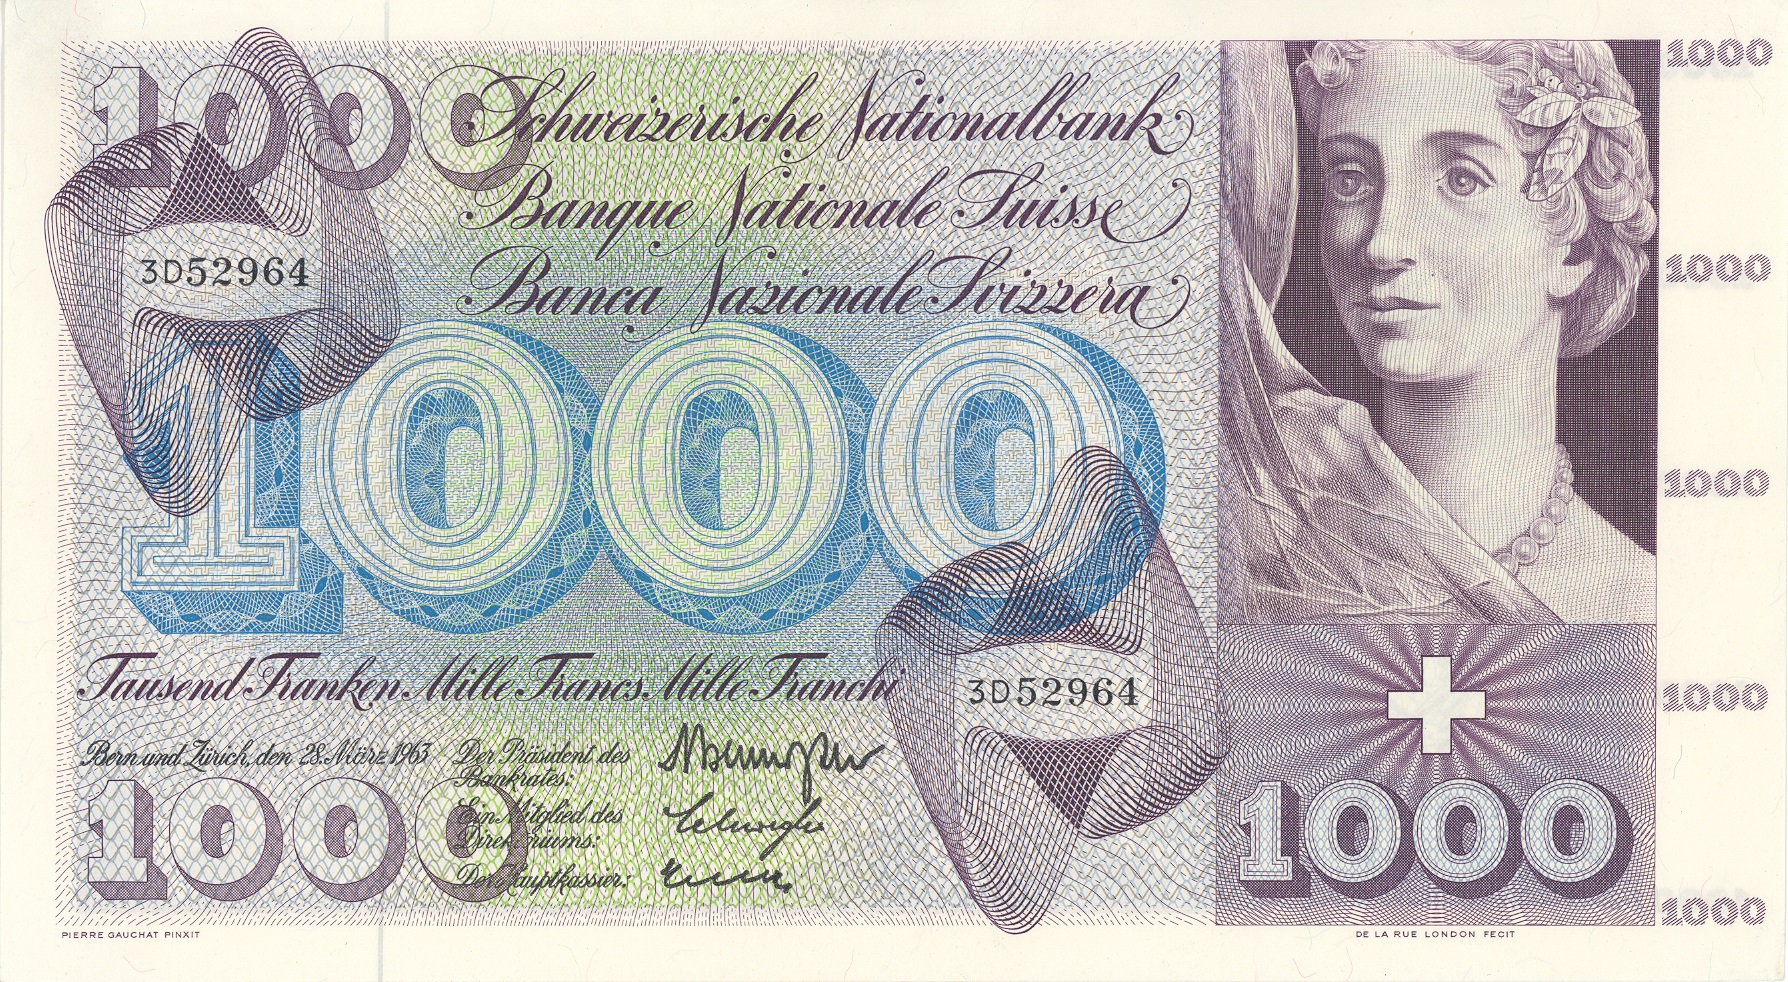 5. Banknotenserie 1956, 1000-Franken-Note, Vorderseite